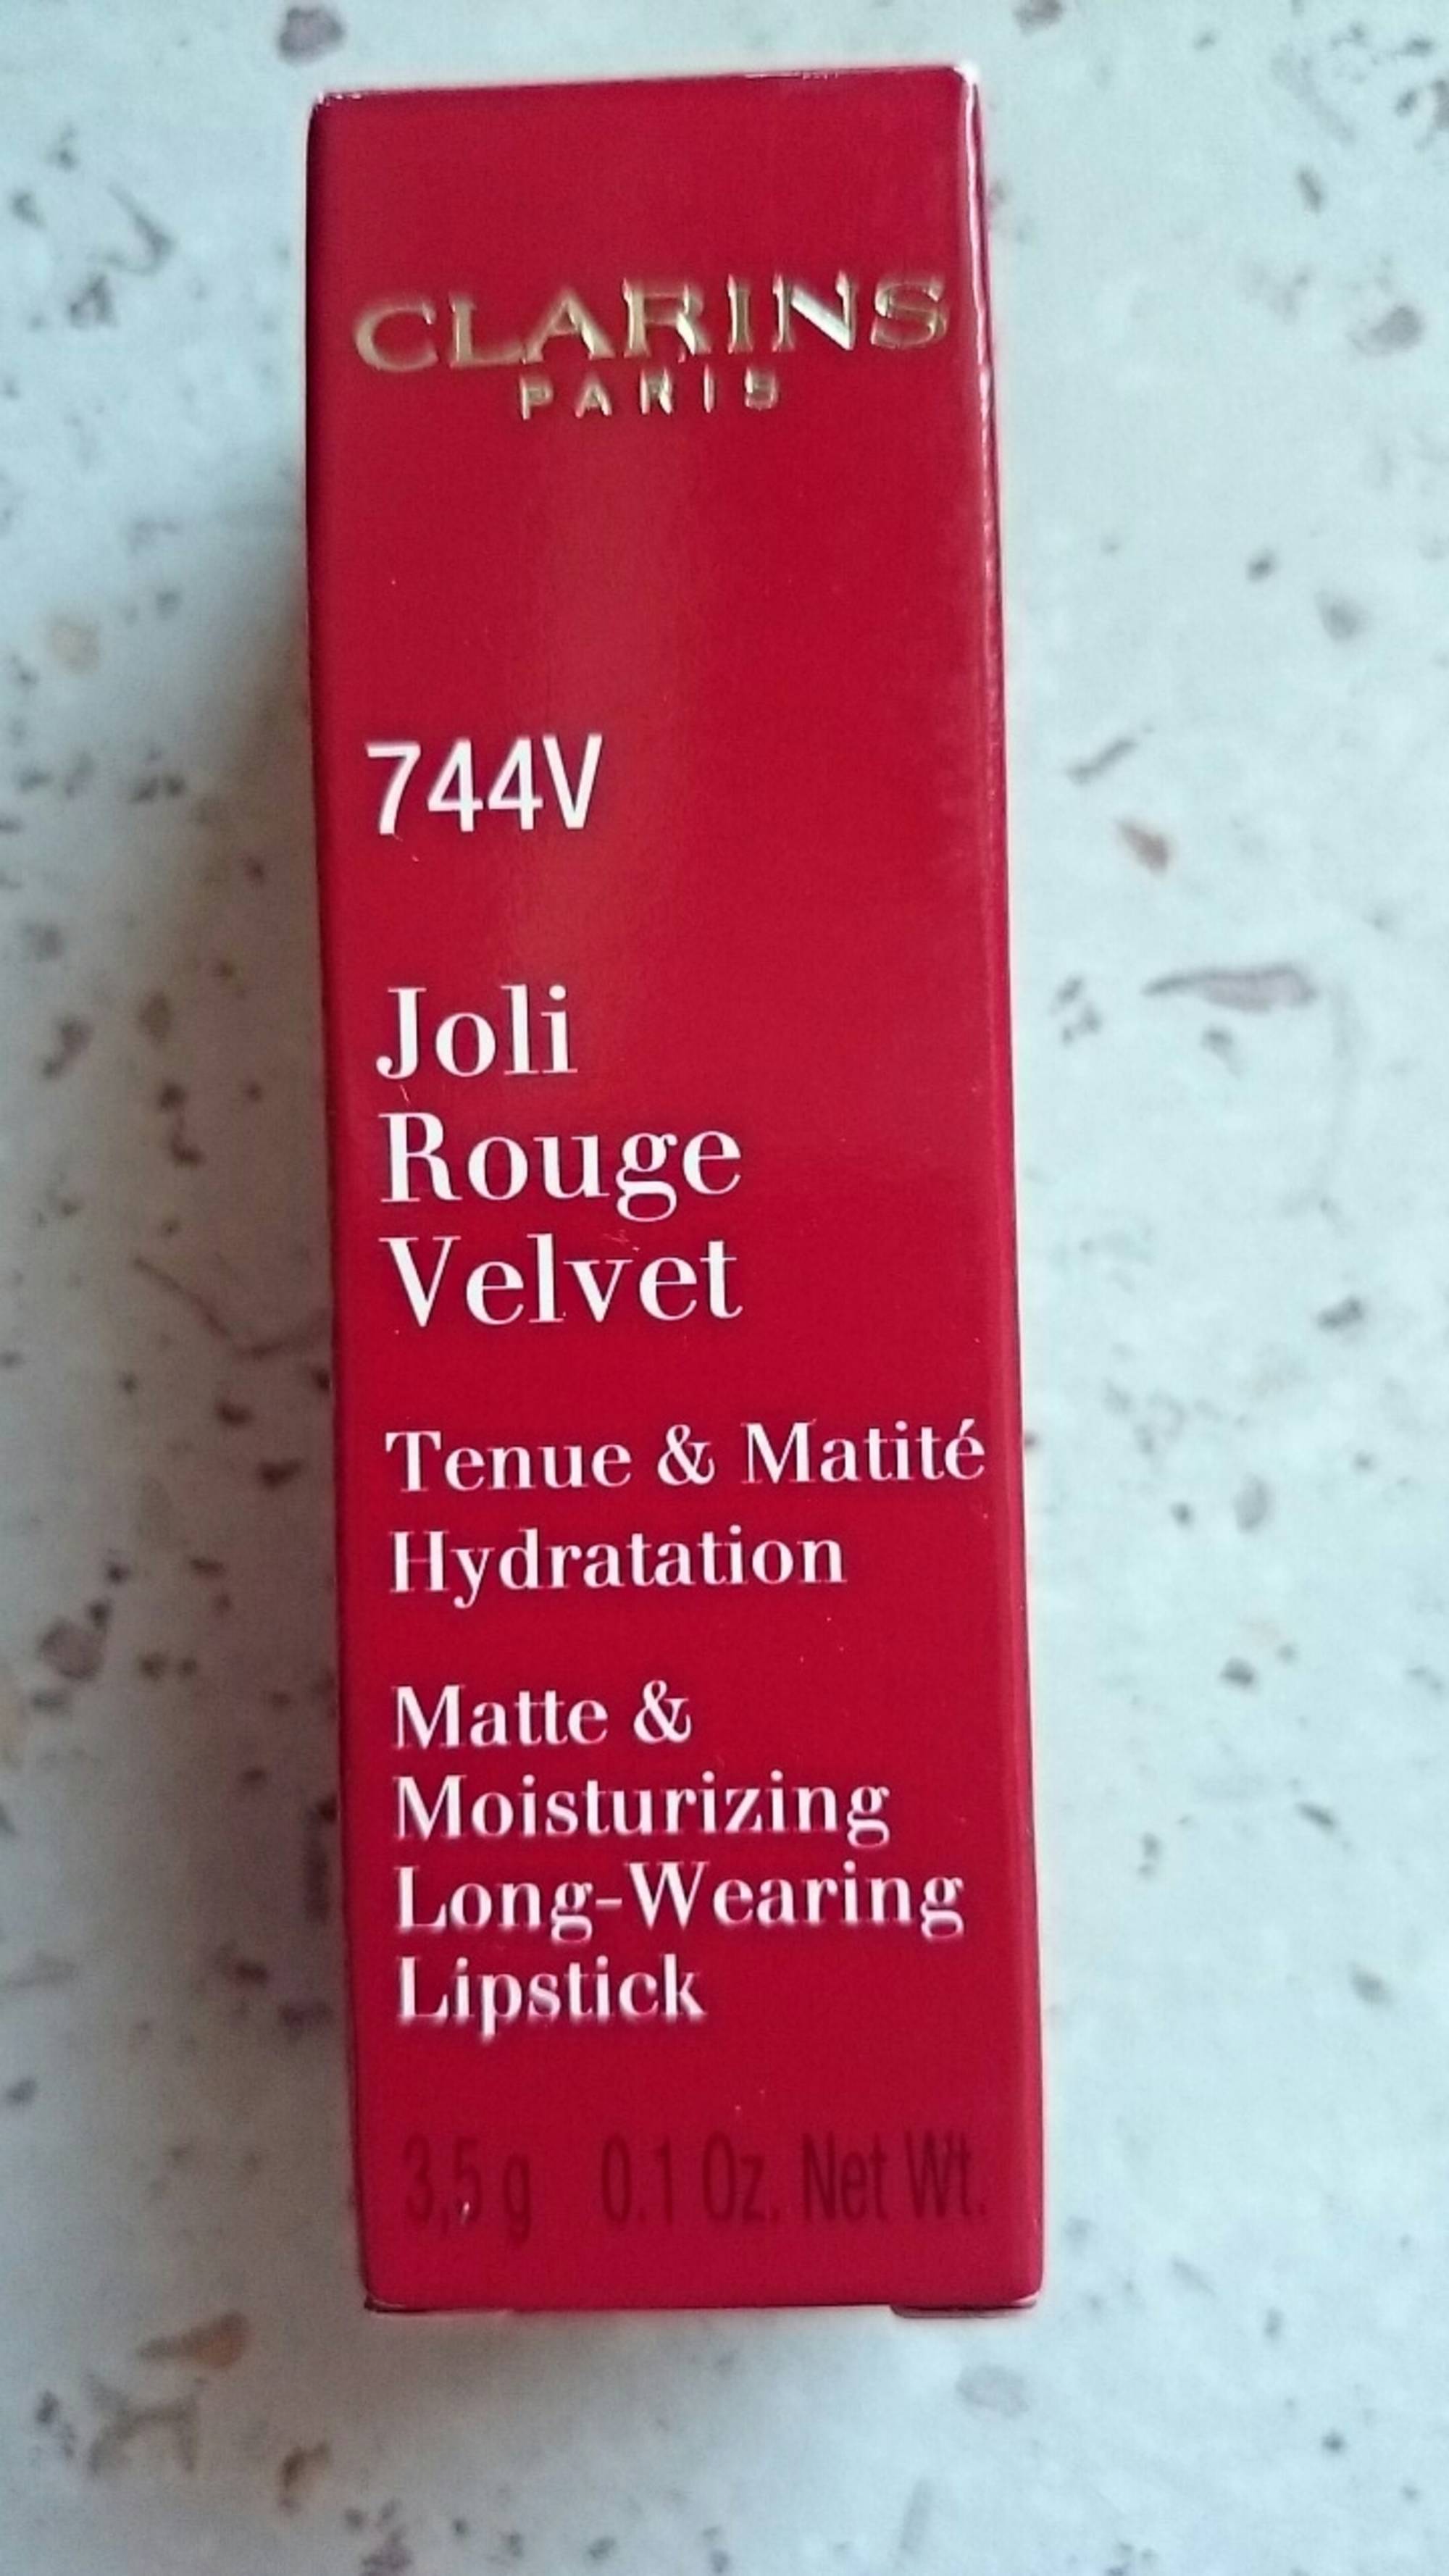 CLARINS - Joli rouge velvet 744V